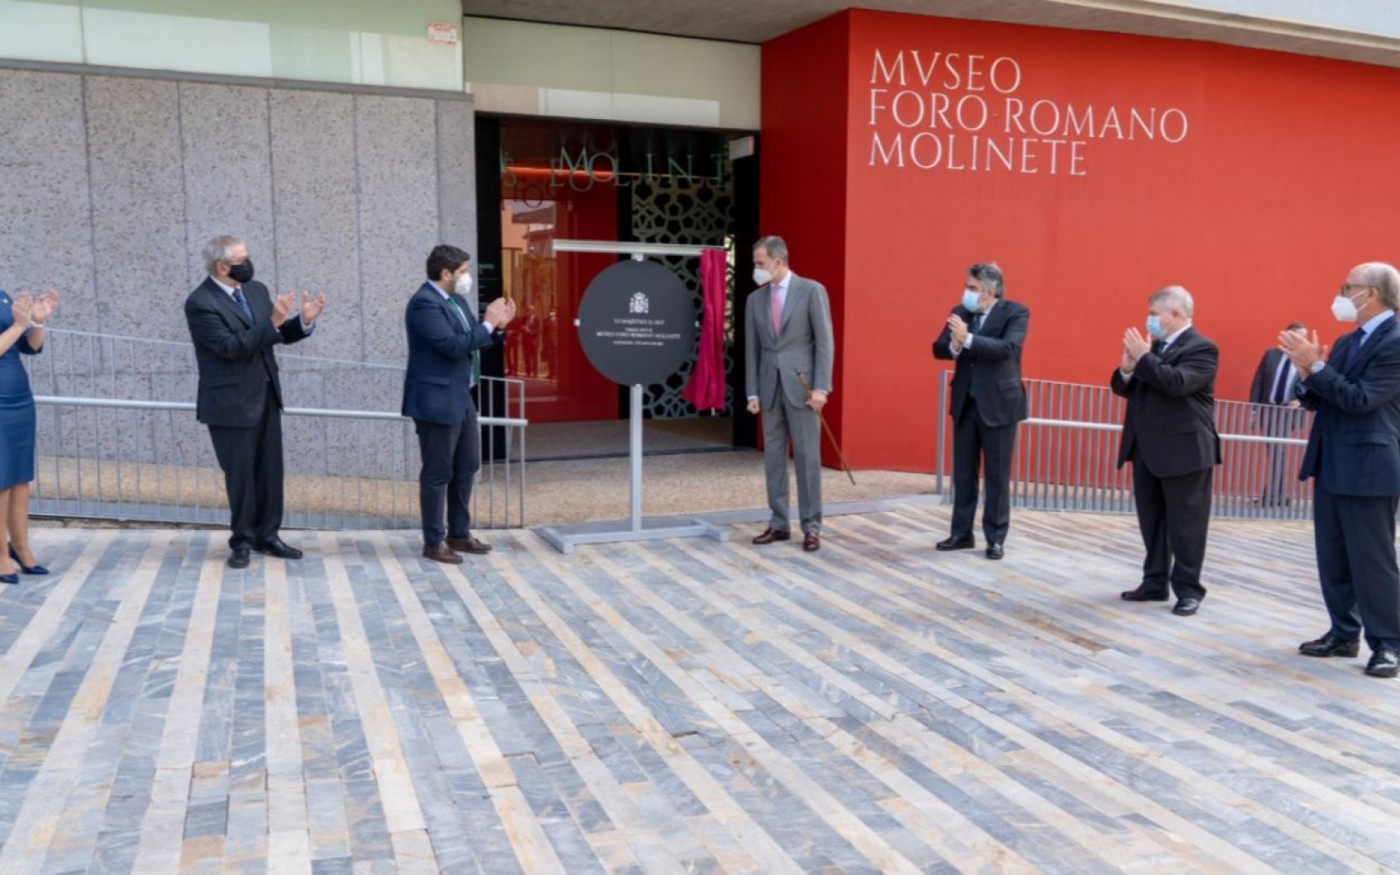 GALERÍA | Felipe VI inaugura el Museo Foro Romano Molinete en Cartagena